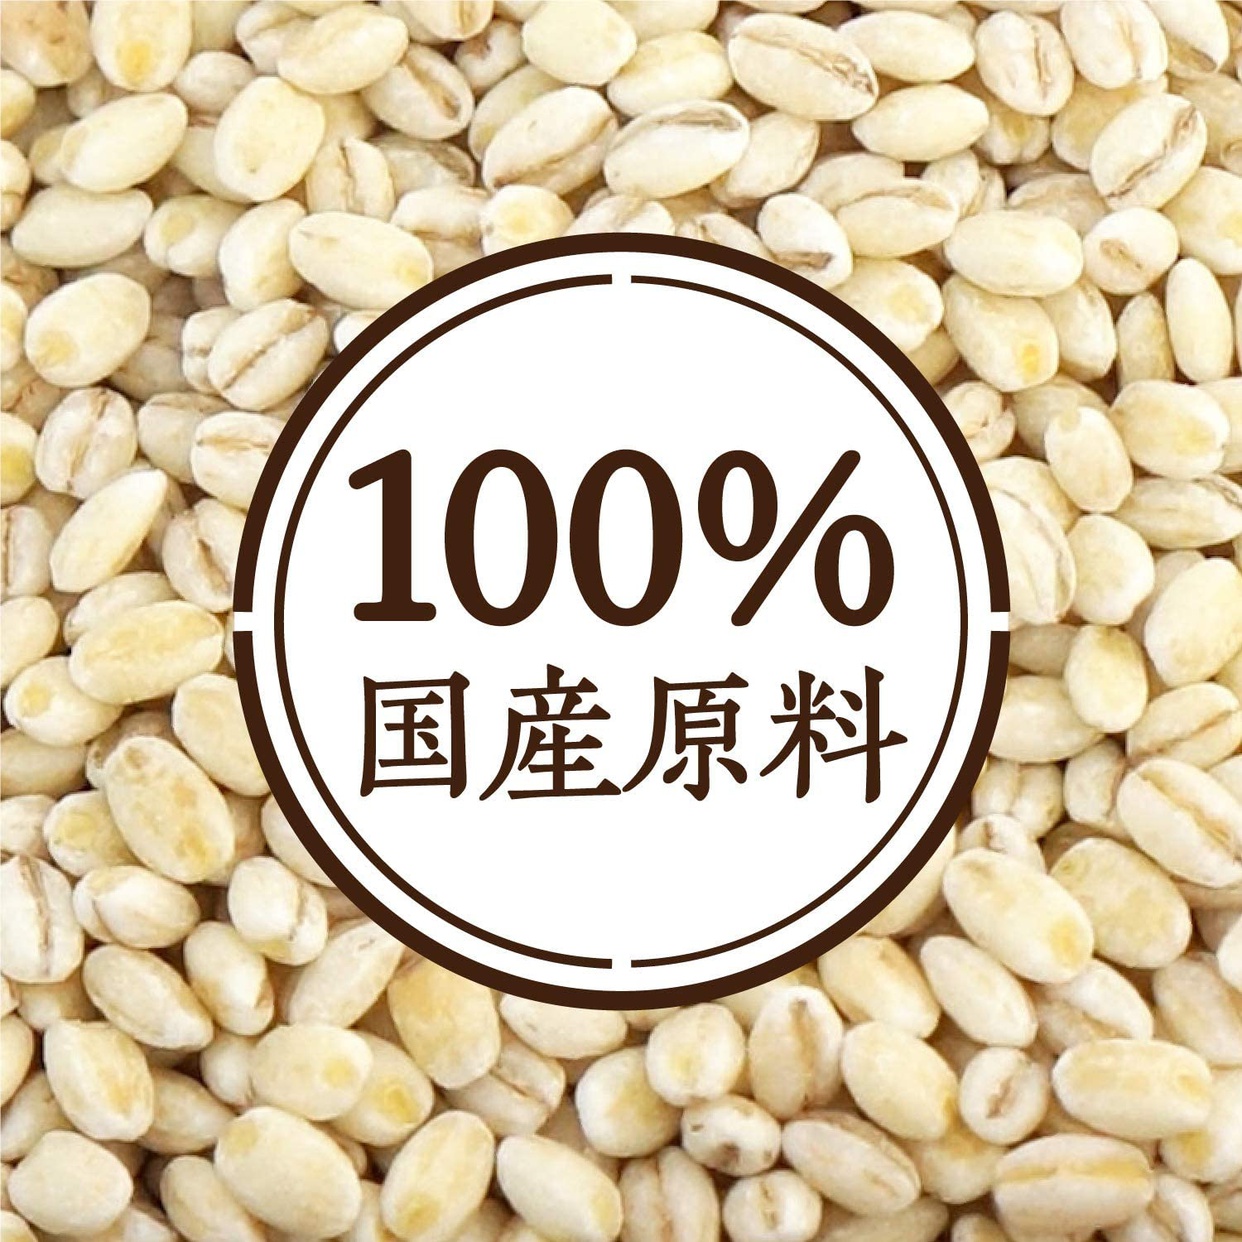 hakubaku もち麦の商品画像サムネ4 